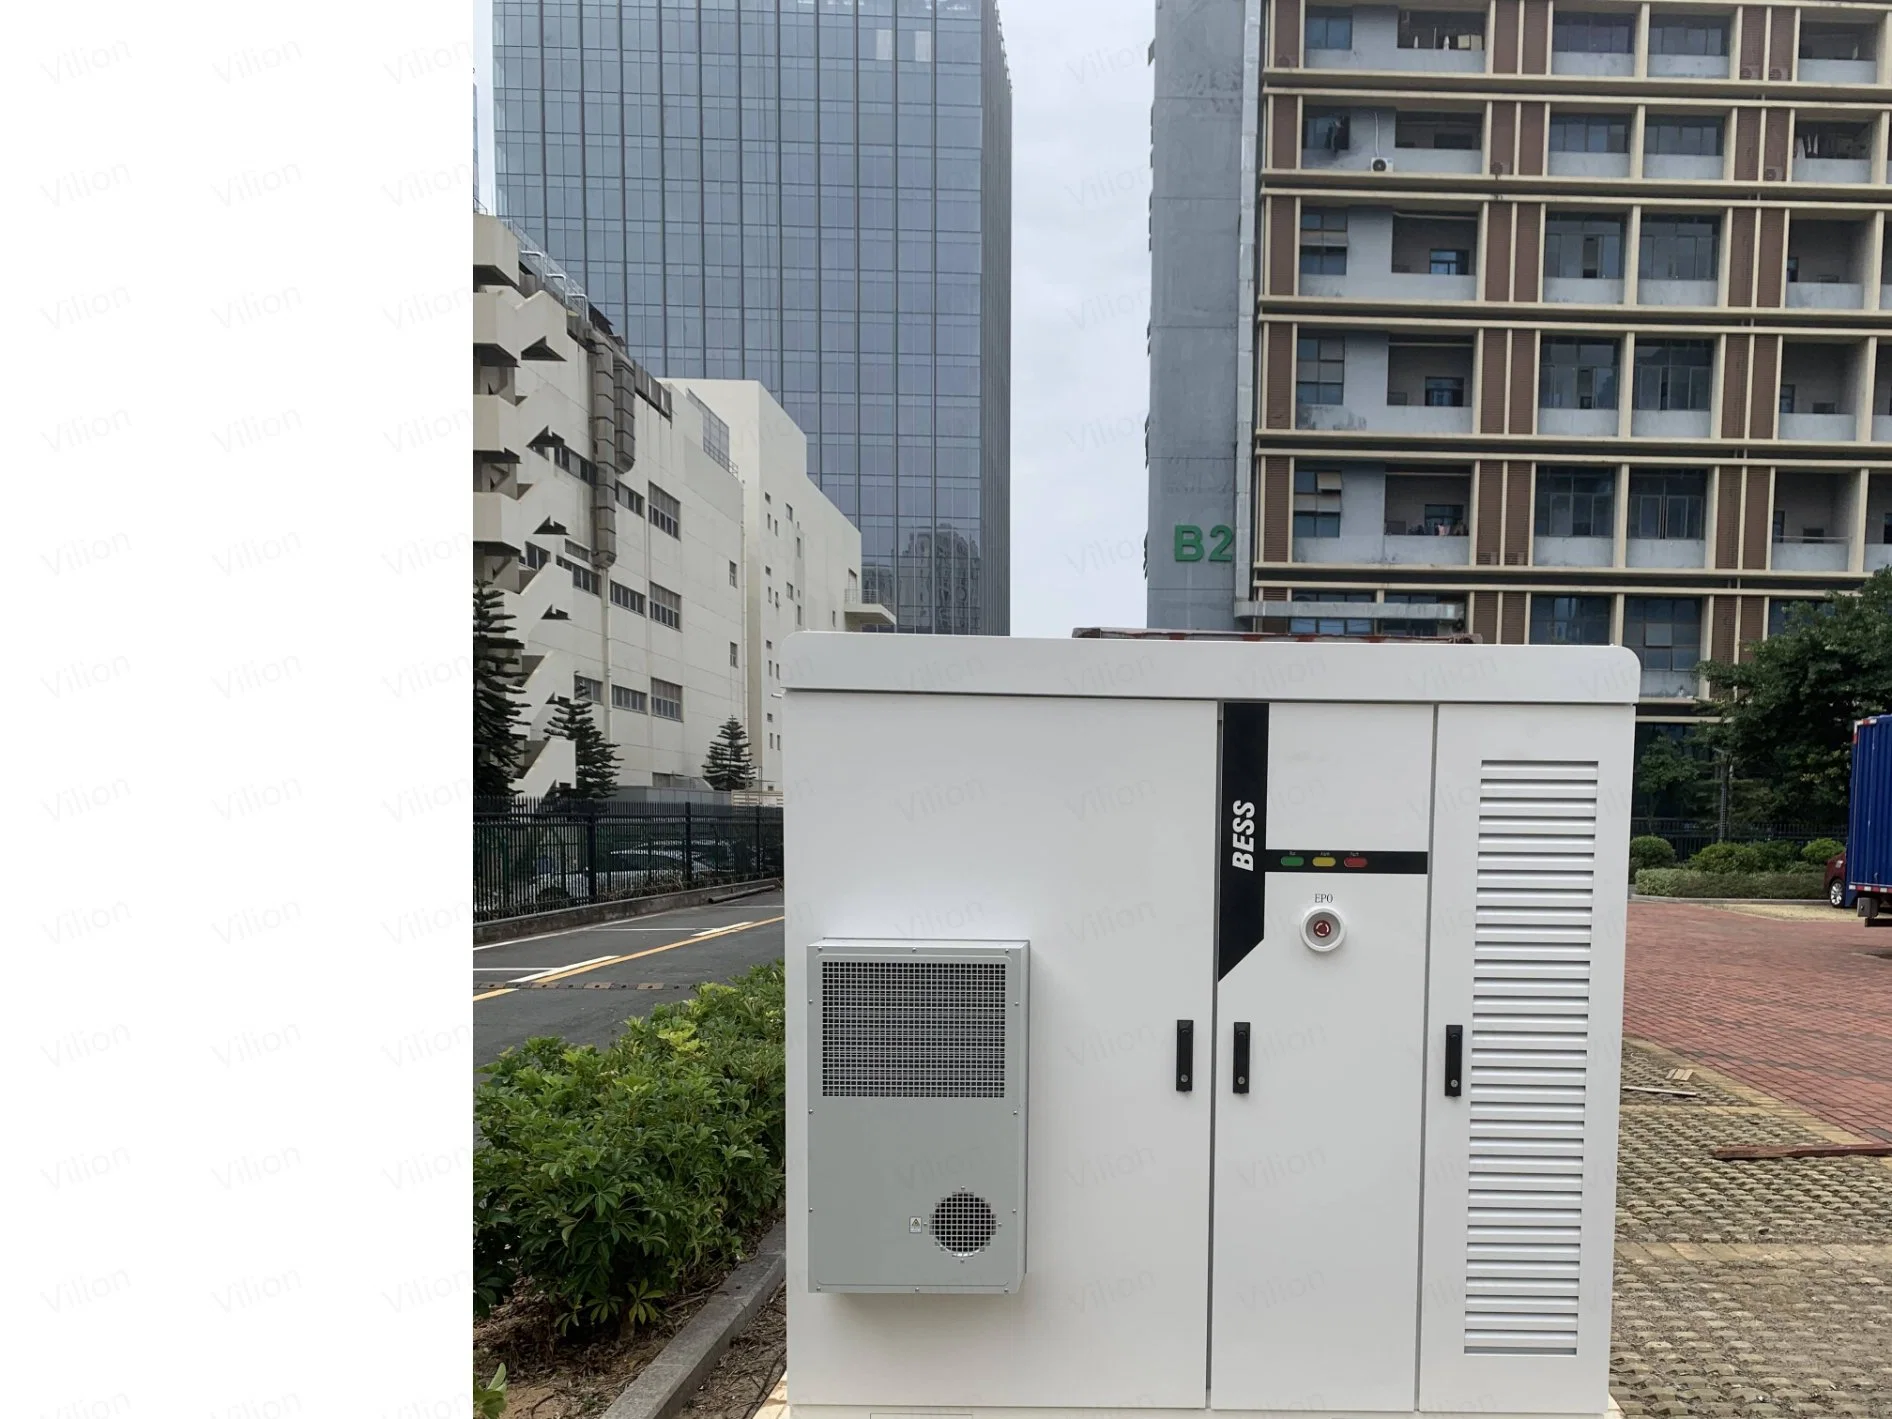 ISO CE off Grid Battery Storage System (نظام تخزين بطارية الشبكة) لتخزين الطاقة محطة طاقة محمولة بالجملة بقدرة 300 كيلو واط